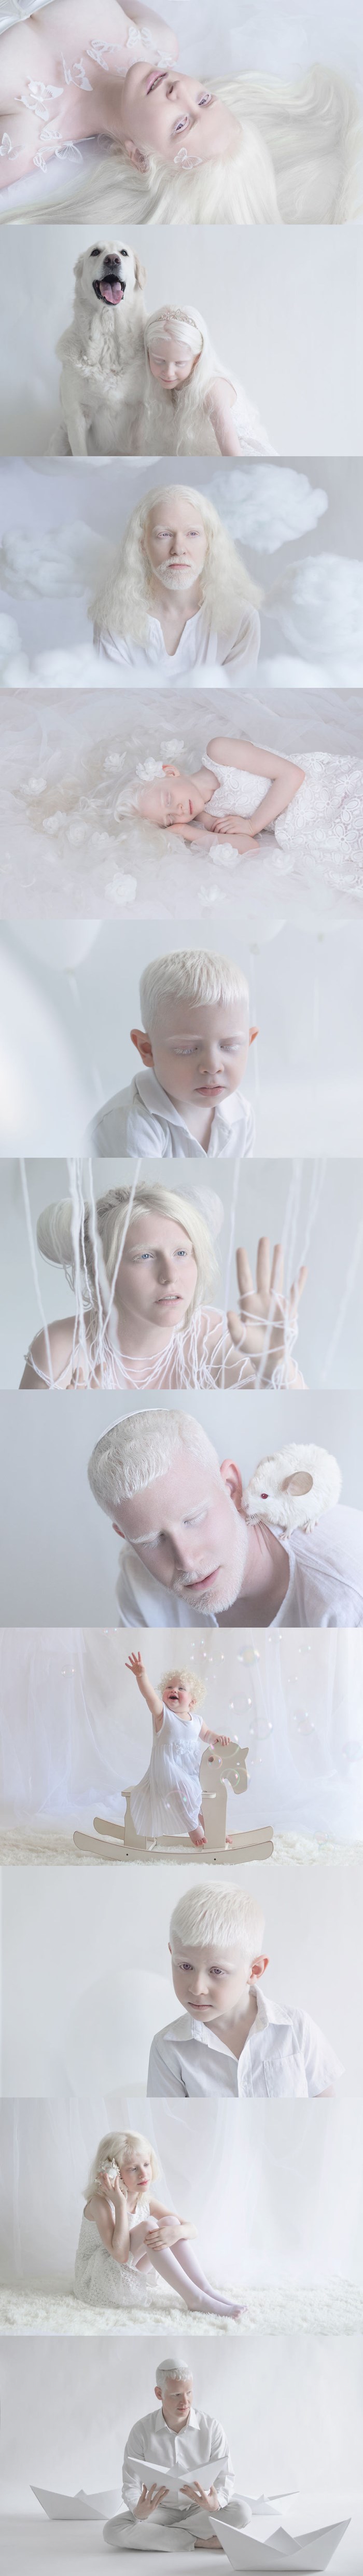 Hipnotizirajuća ljepota albino ljudi - fotografije kakve niste vidjeli do sada 